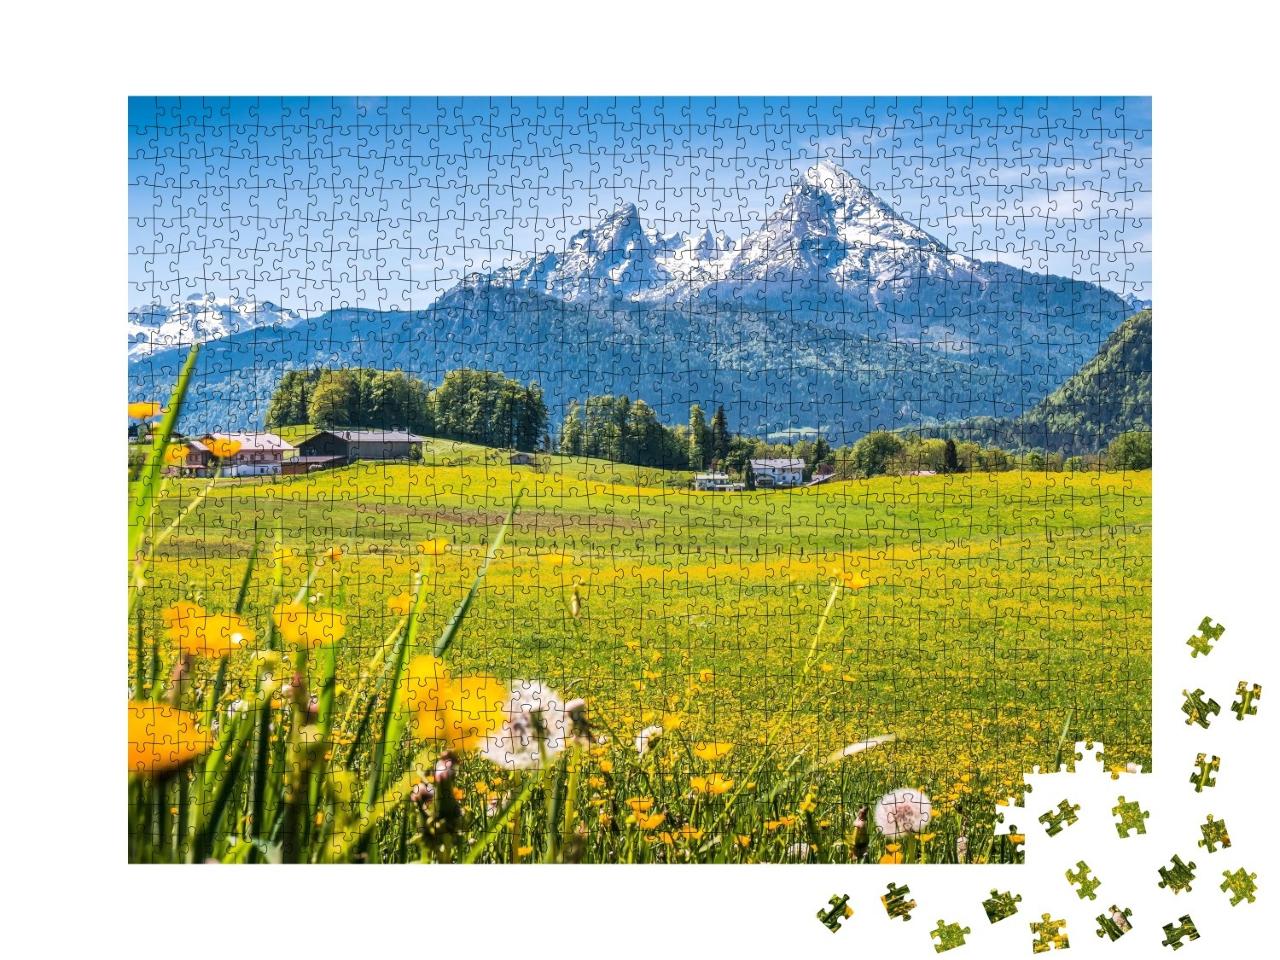 Puzzle de 1000 pièces « Paysage idyllique dans les Alpes, Berchtesgadener Land, Allemagne »